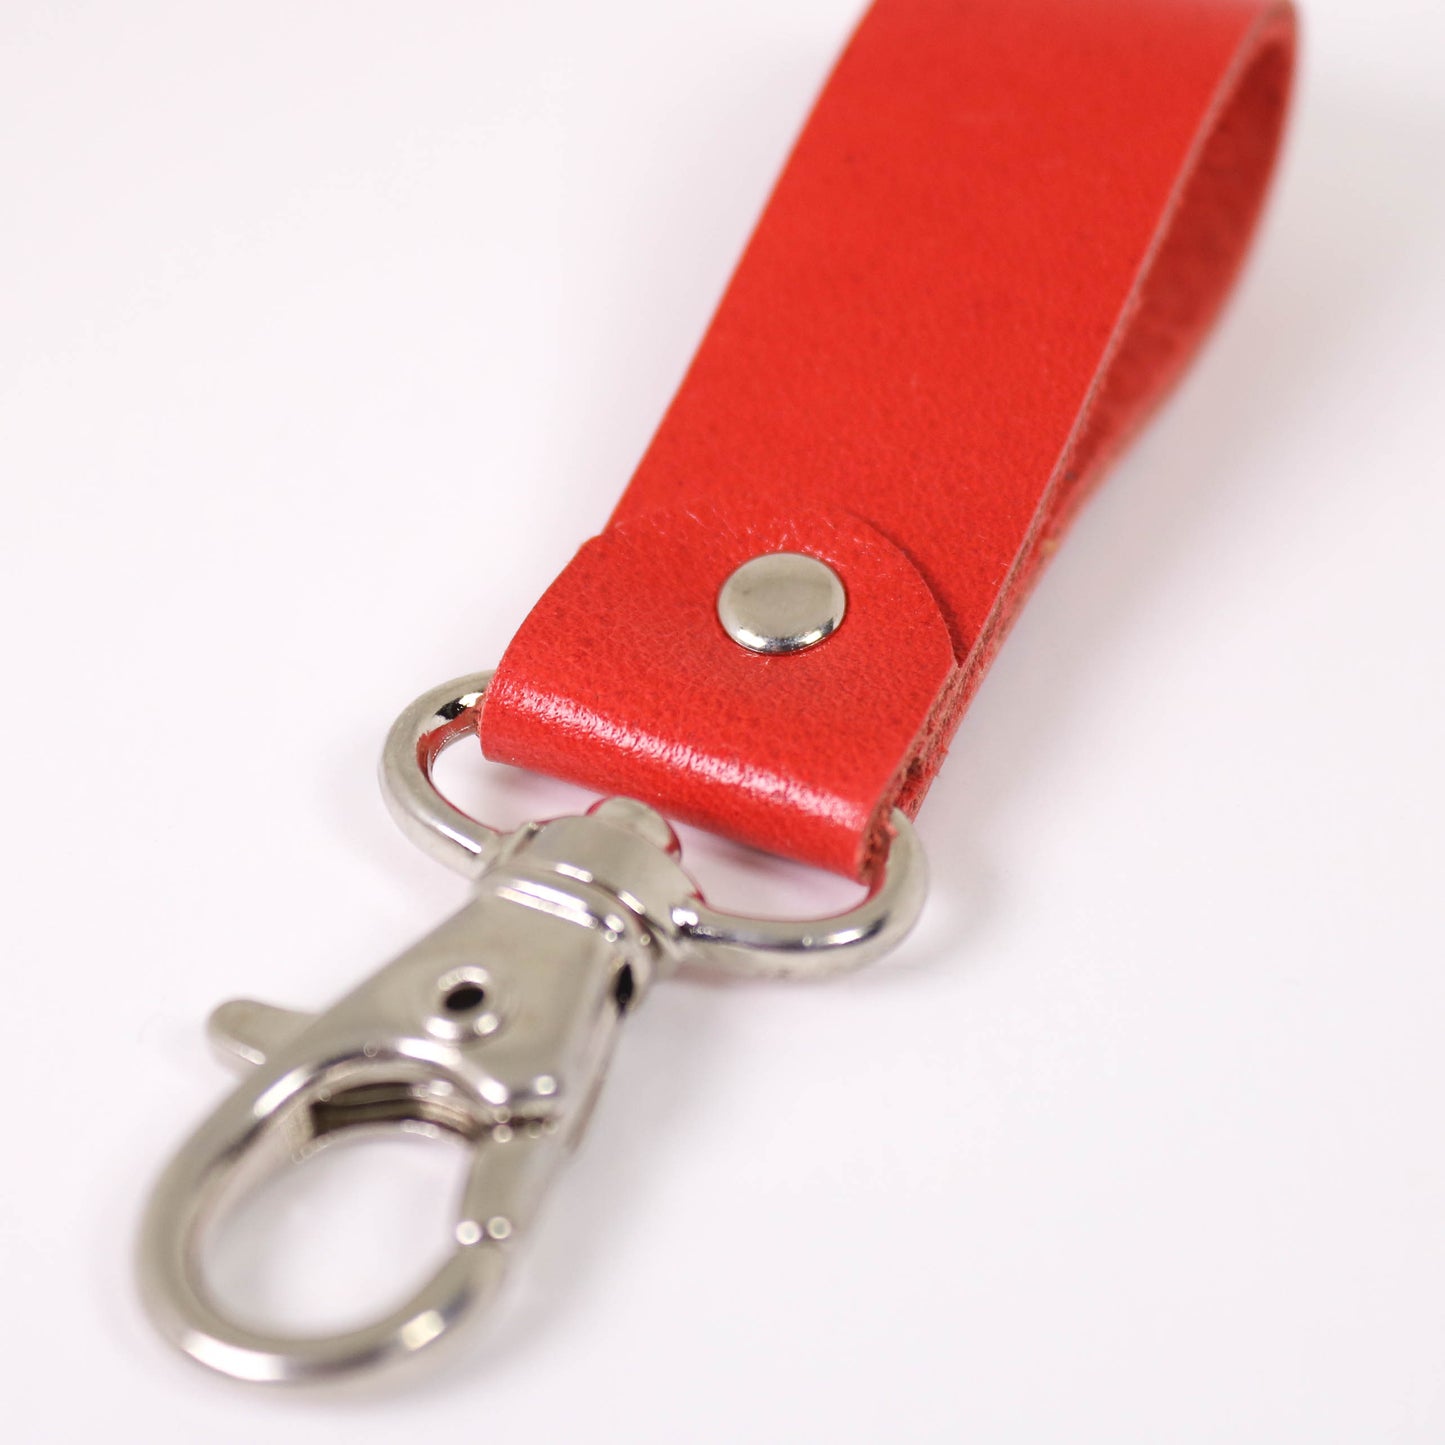 Red key ring